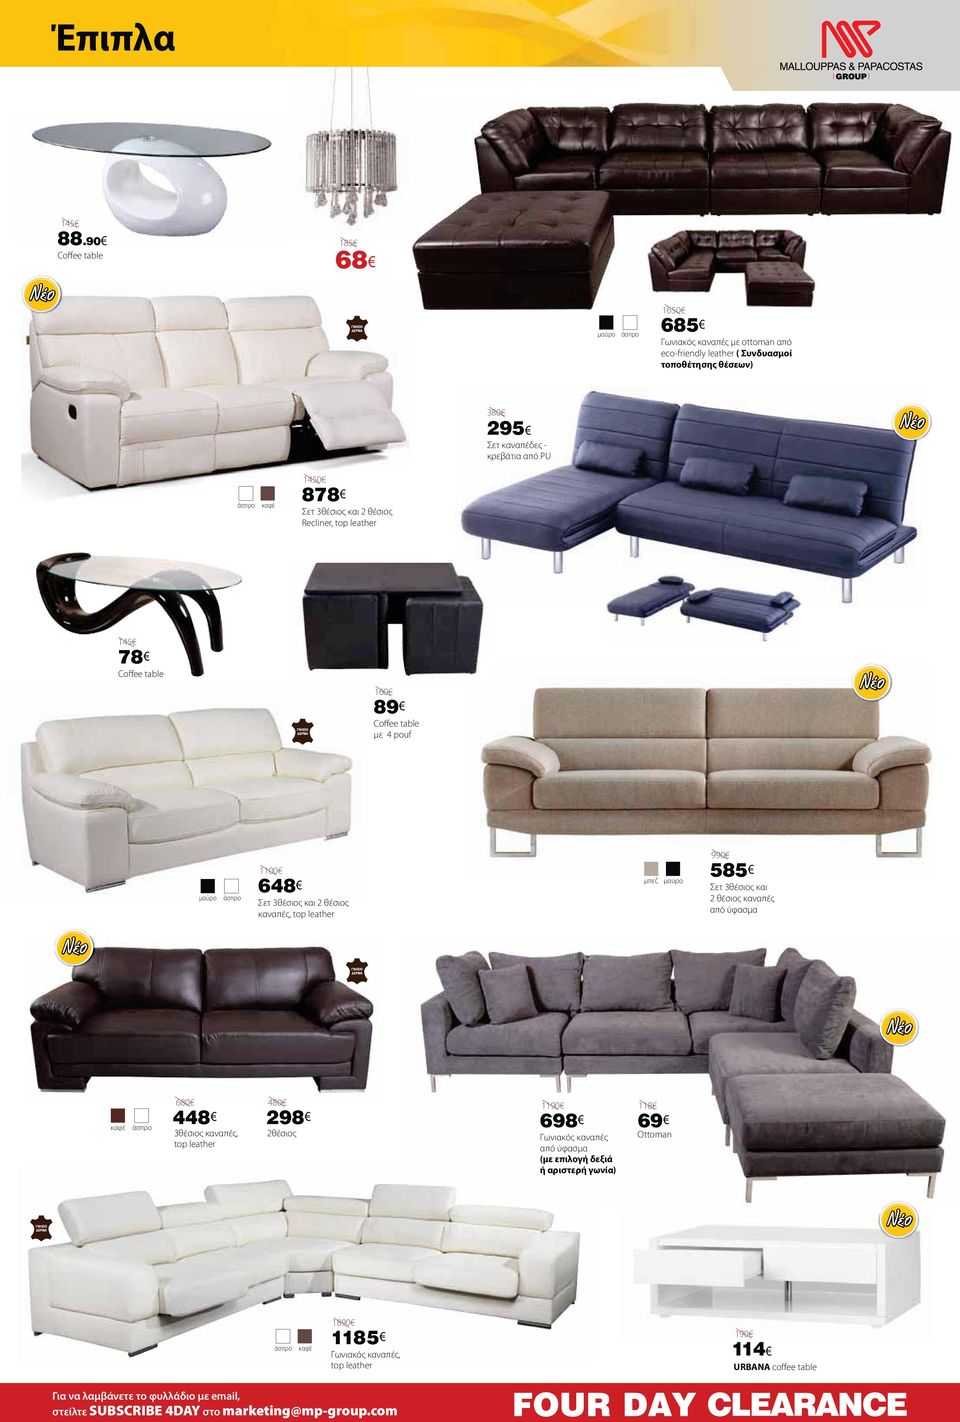 θέσιος καναπές 680 4 3θέσιος καναπές, top leather 480 2 2θέσιος 1190 6 Γωνιακός καναπές (με επιλογή δεξιά ή αριστερή γωνία) 118 69 Ottoman 1890